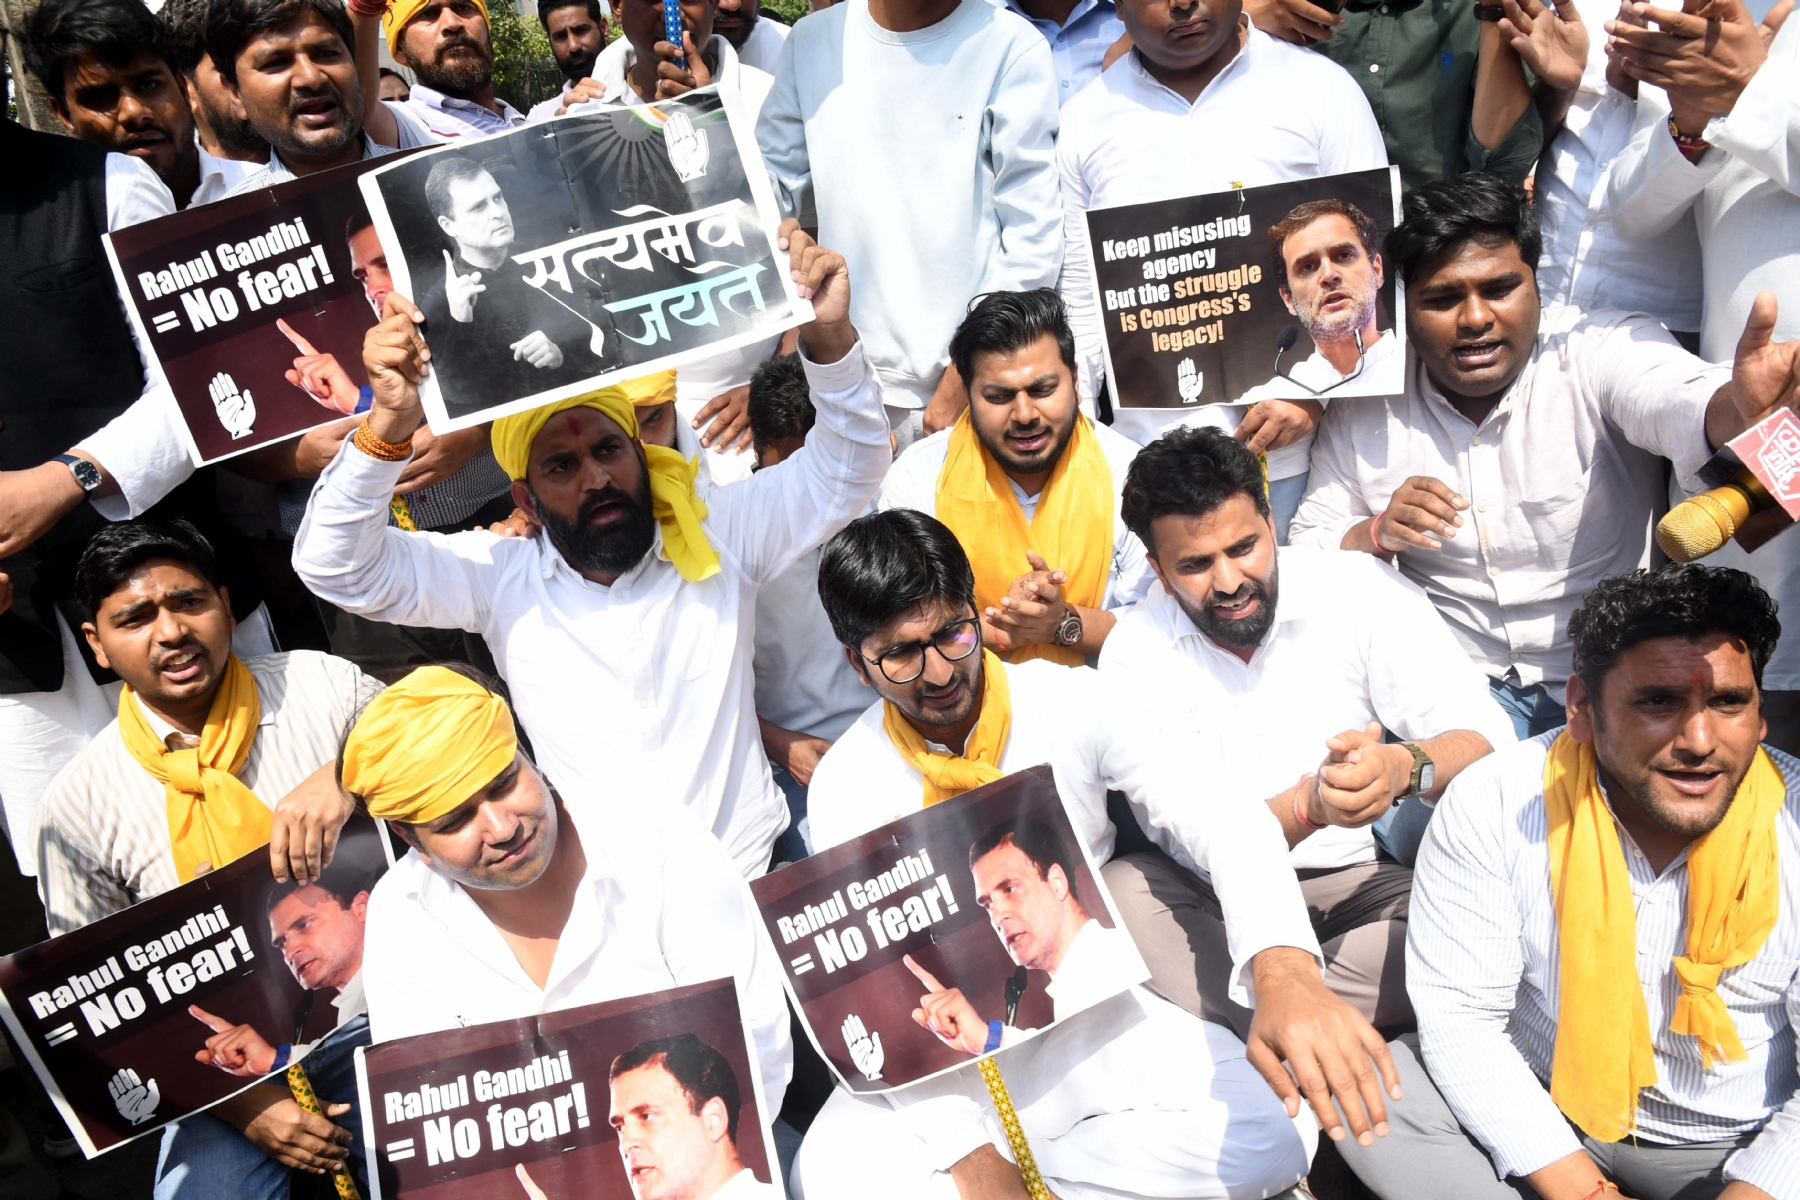 नई दिल्ली में गुरुवार 23 मार्च को राहुल गांधी को दो साल की सजा के मुद्दे पर पीएम मोदी के खिलाफ प्रदर्शन के दौरान नारेबाजी करते भारतीय युवा कांग्रेस के कार्यकर्ता। हिन्दुस्थान समाचार/ फोटो गणेश बिष्ट 